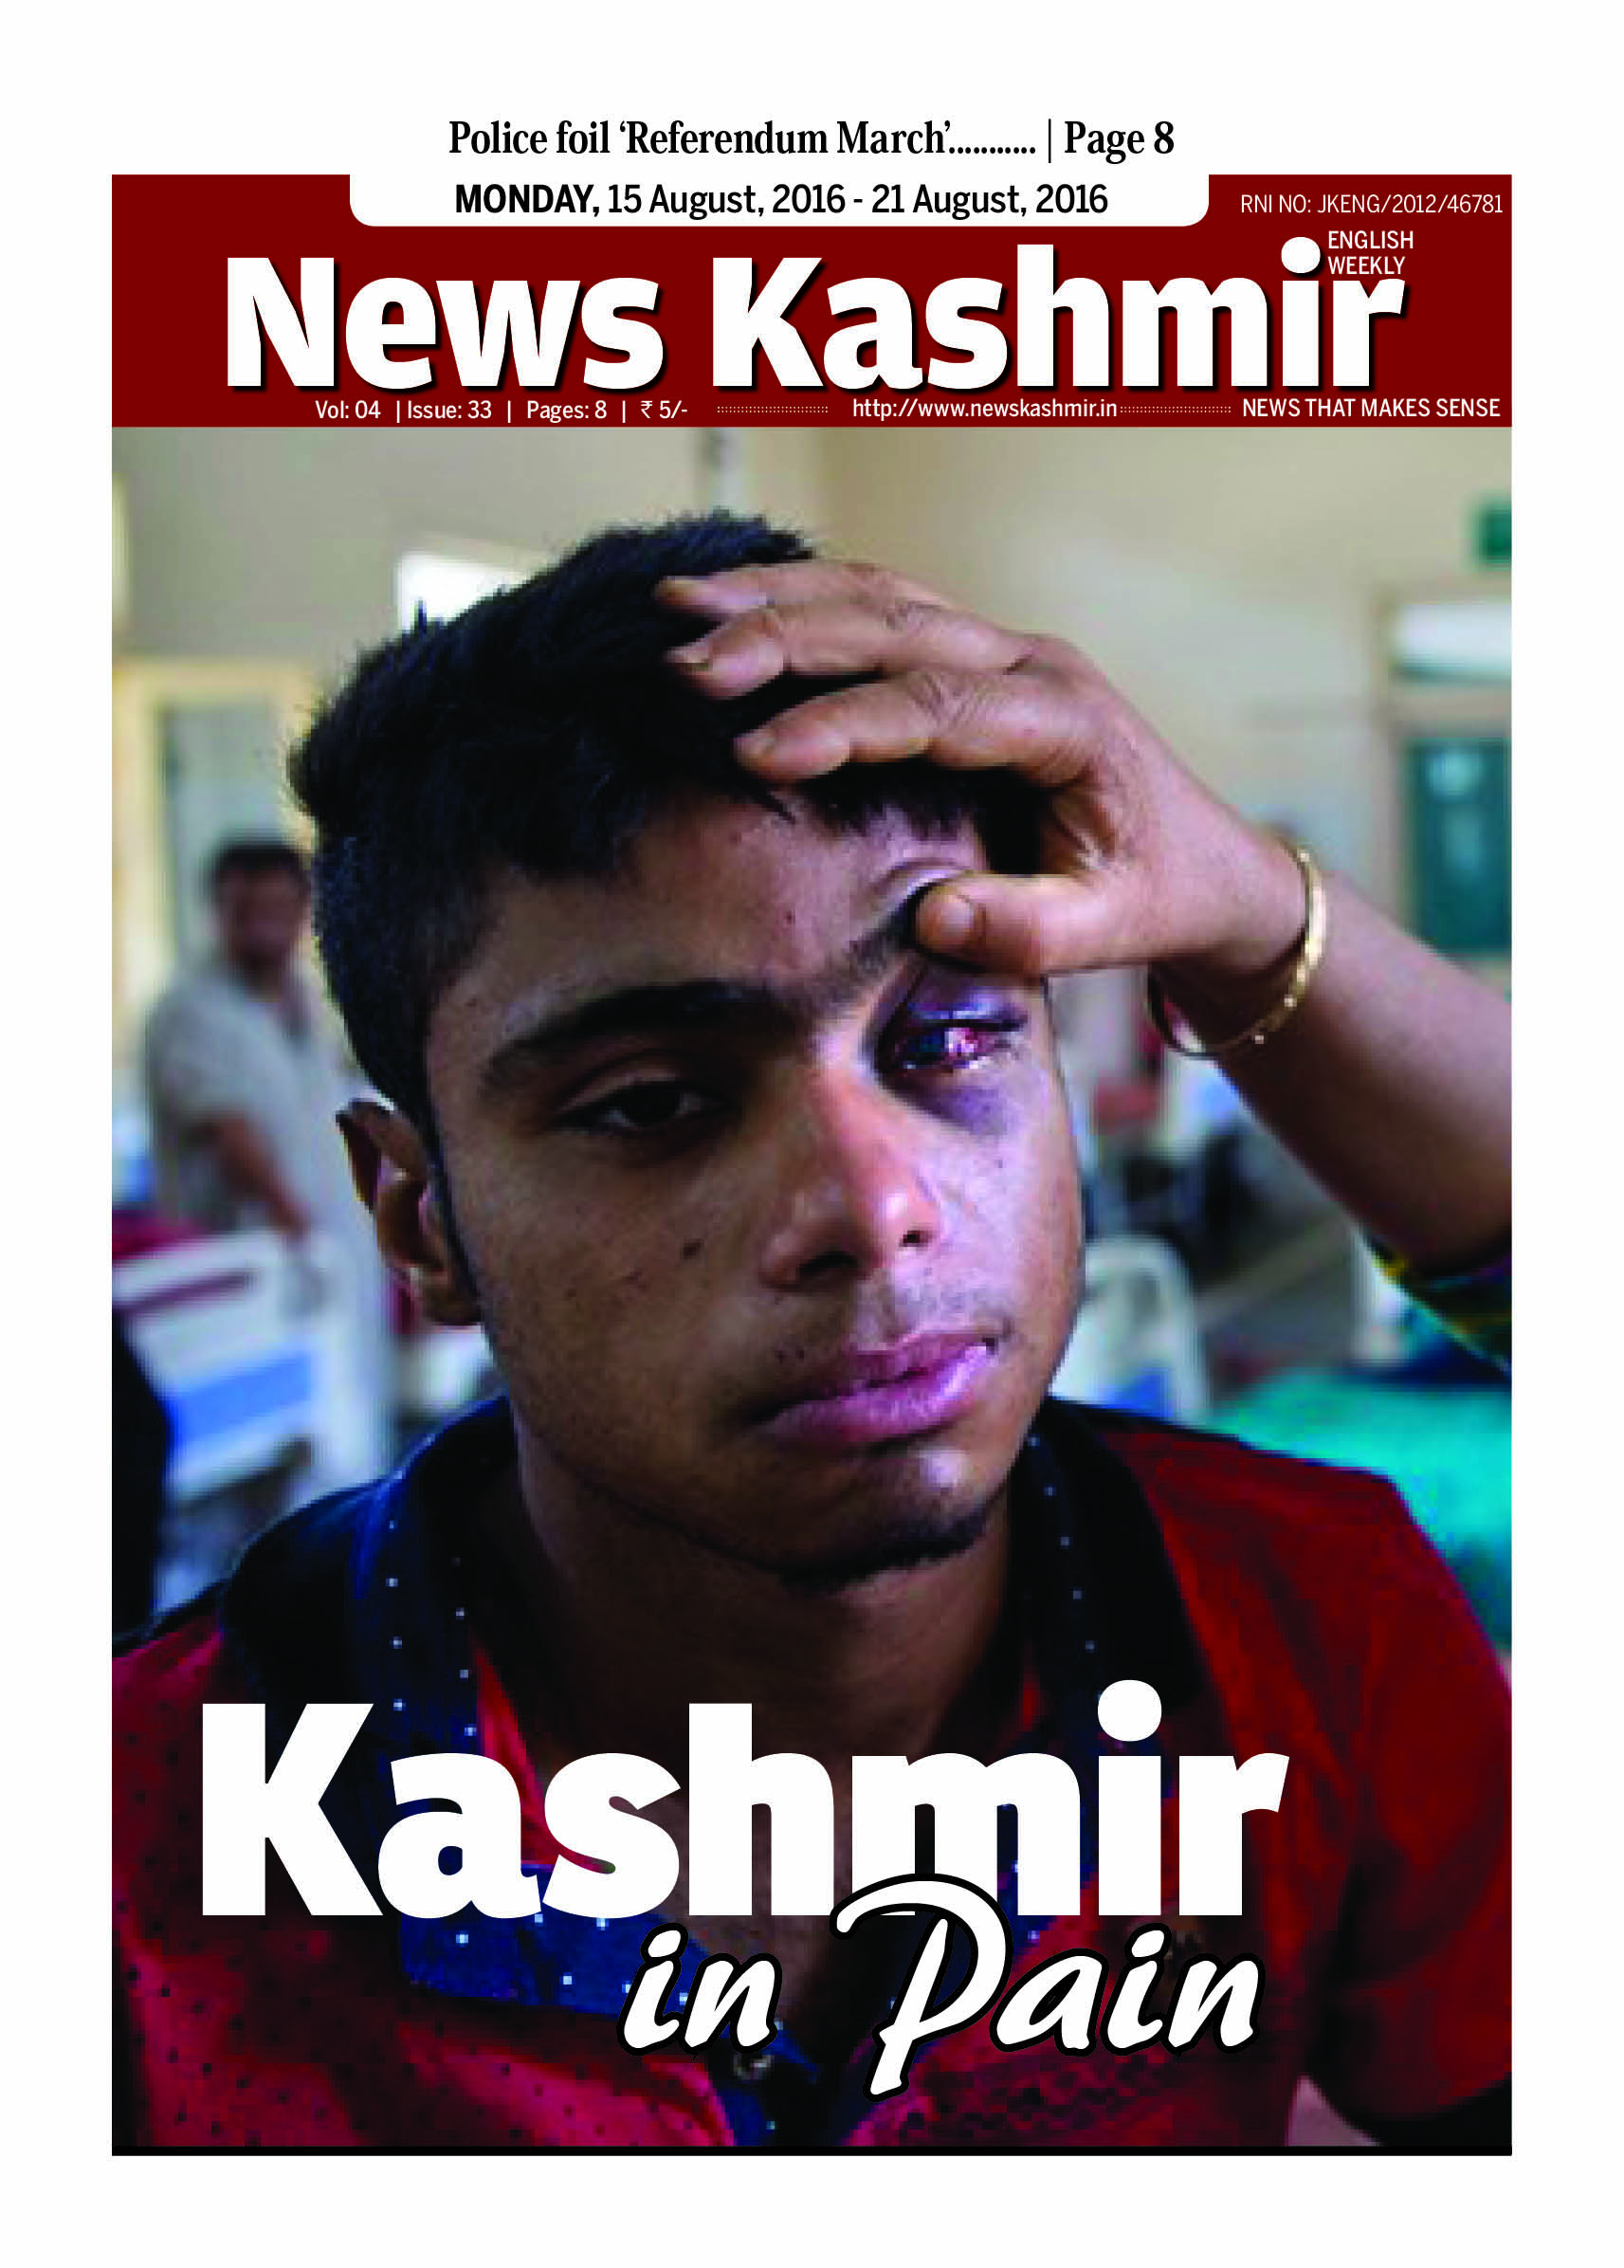 Kashmir in Pain